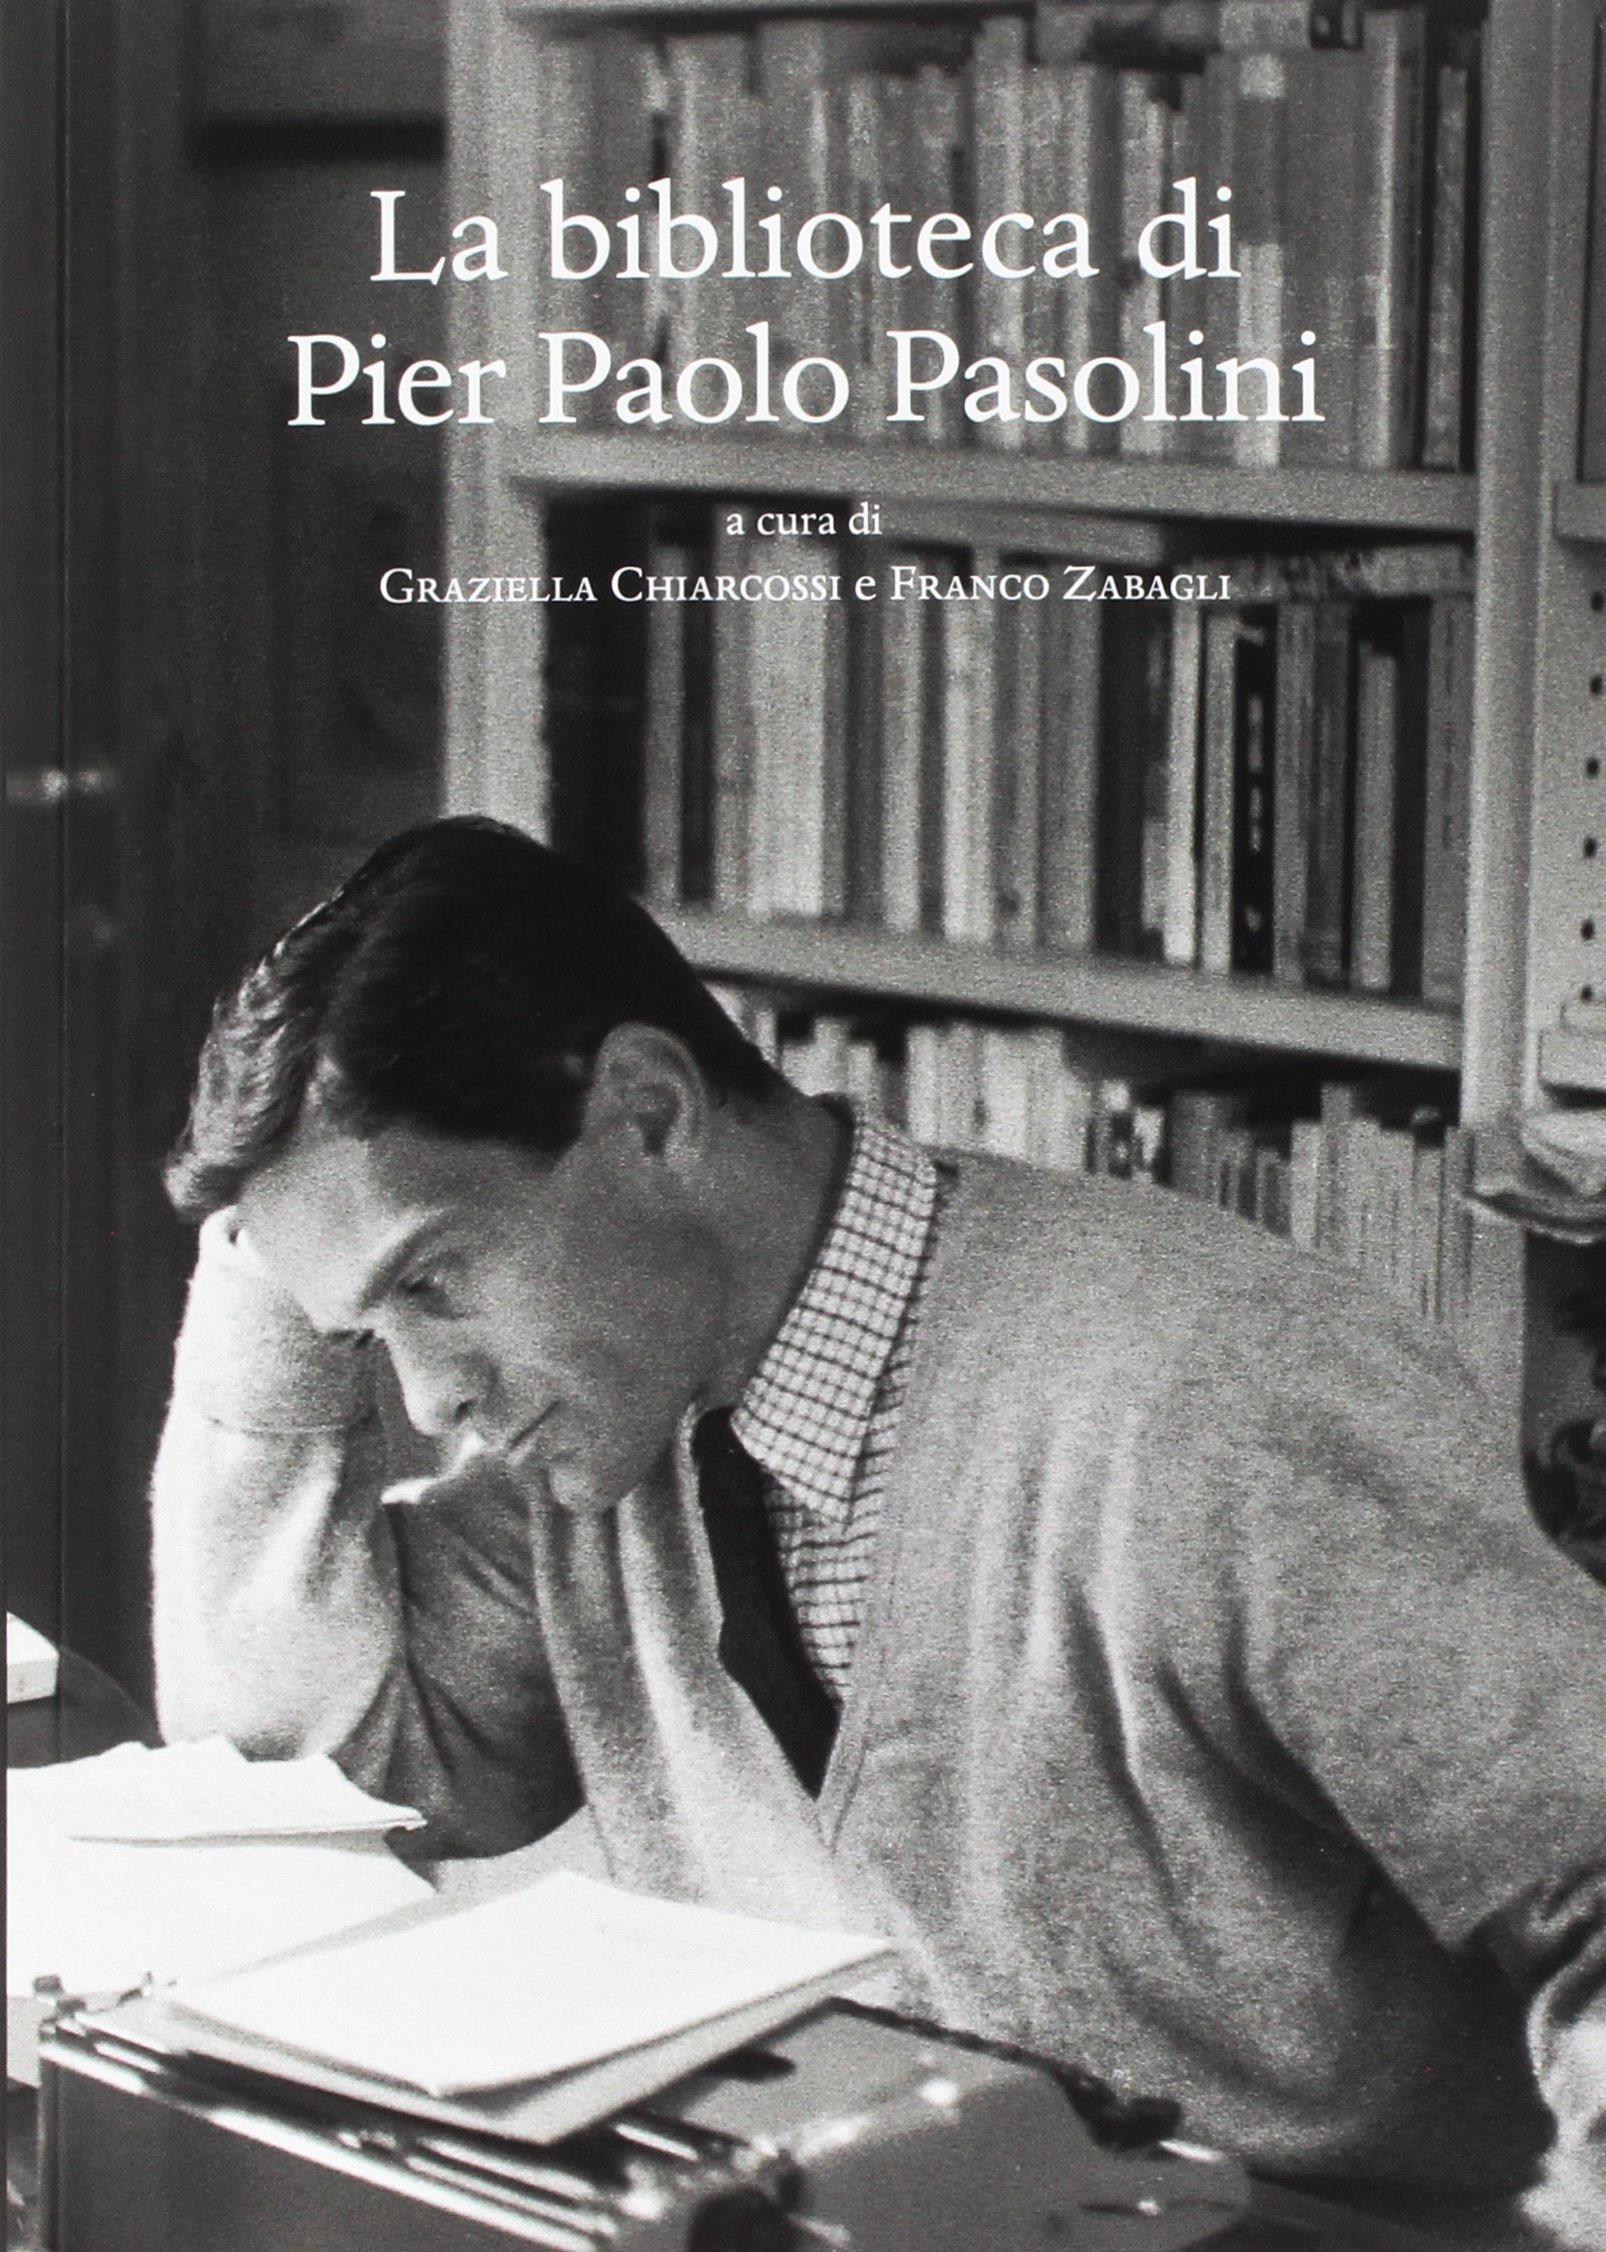 “La Biblioteca di Pier Paolo Pasolini” di Chiarcossi & Zabagli